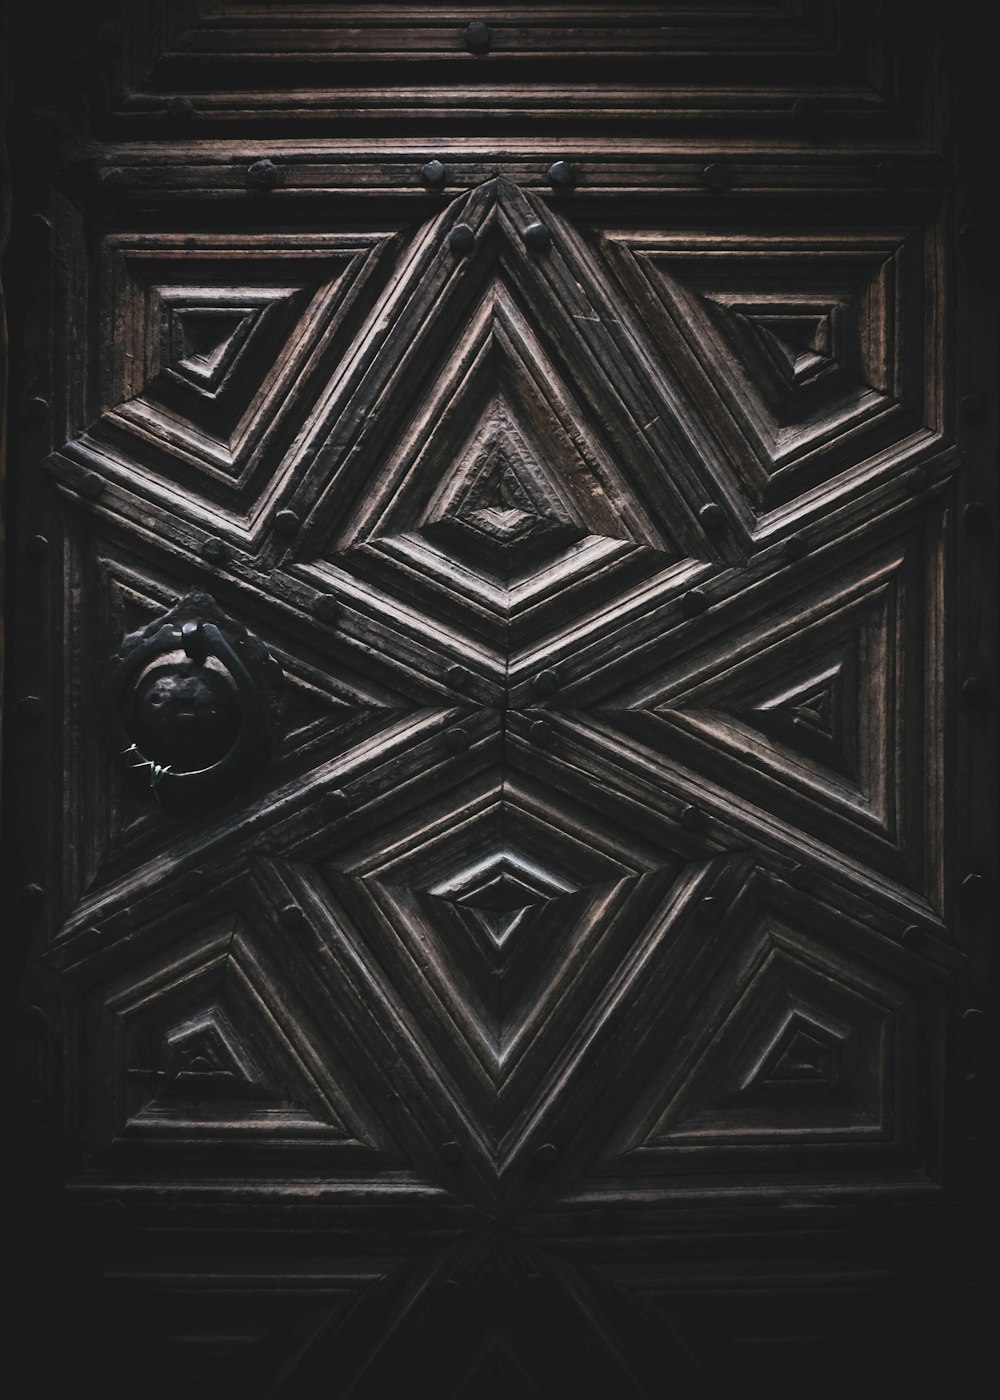 black and white wooden door